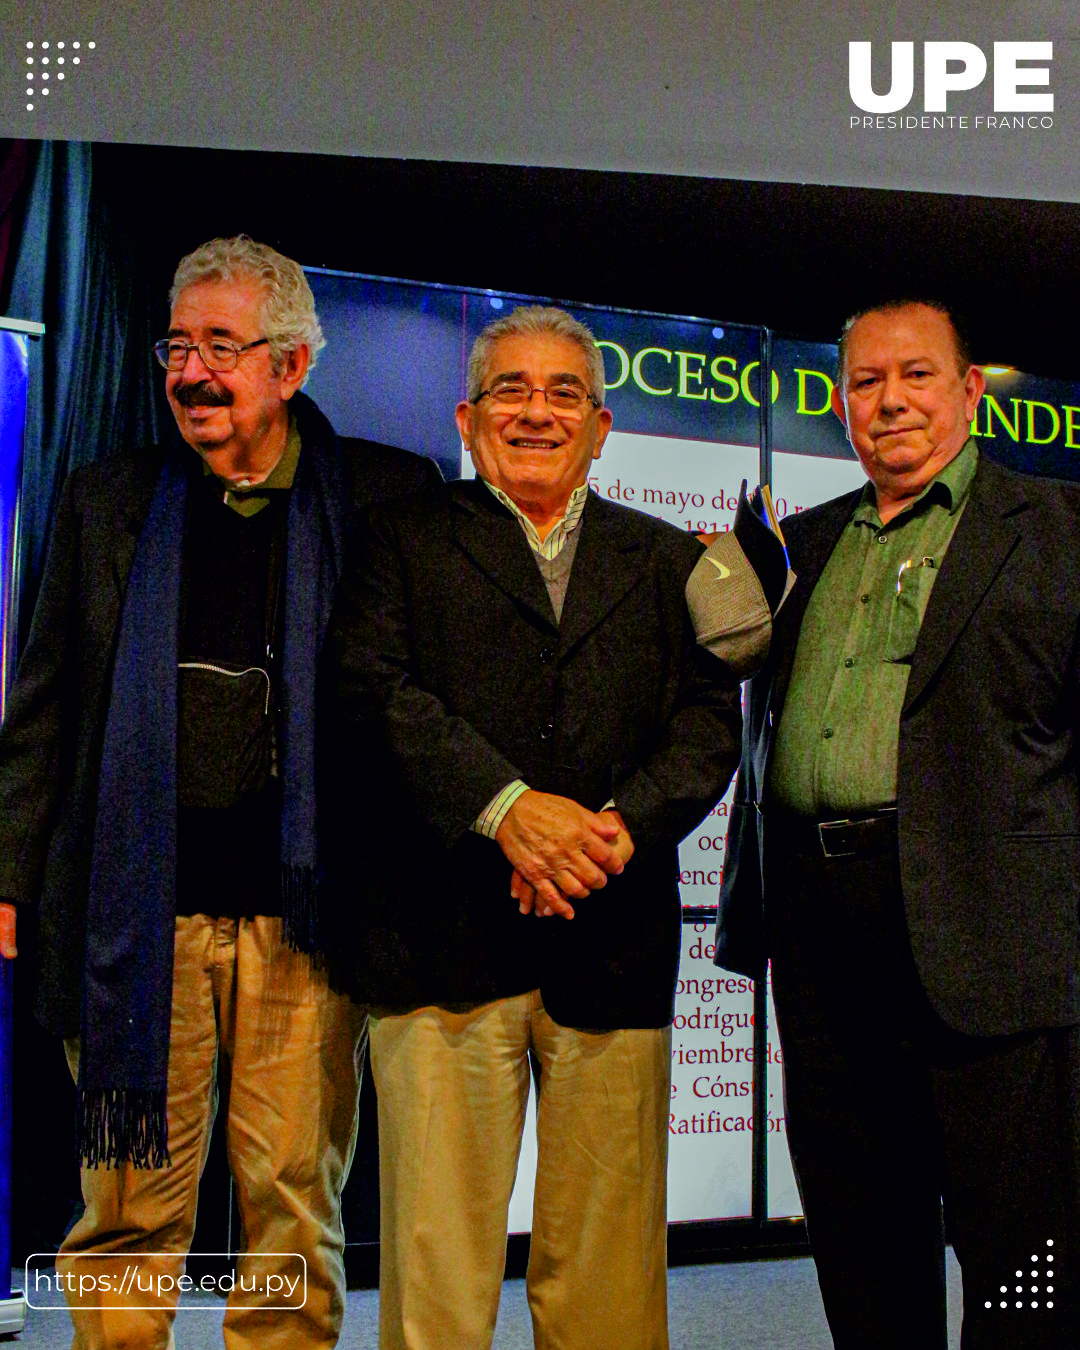 Conferencia sobre la Independencia del Paraguay en la UPE:  Explorando Nuestra Historia